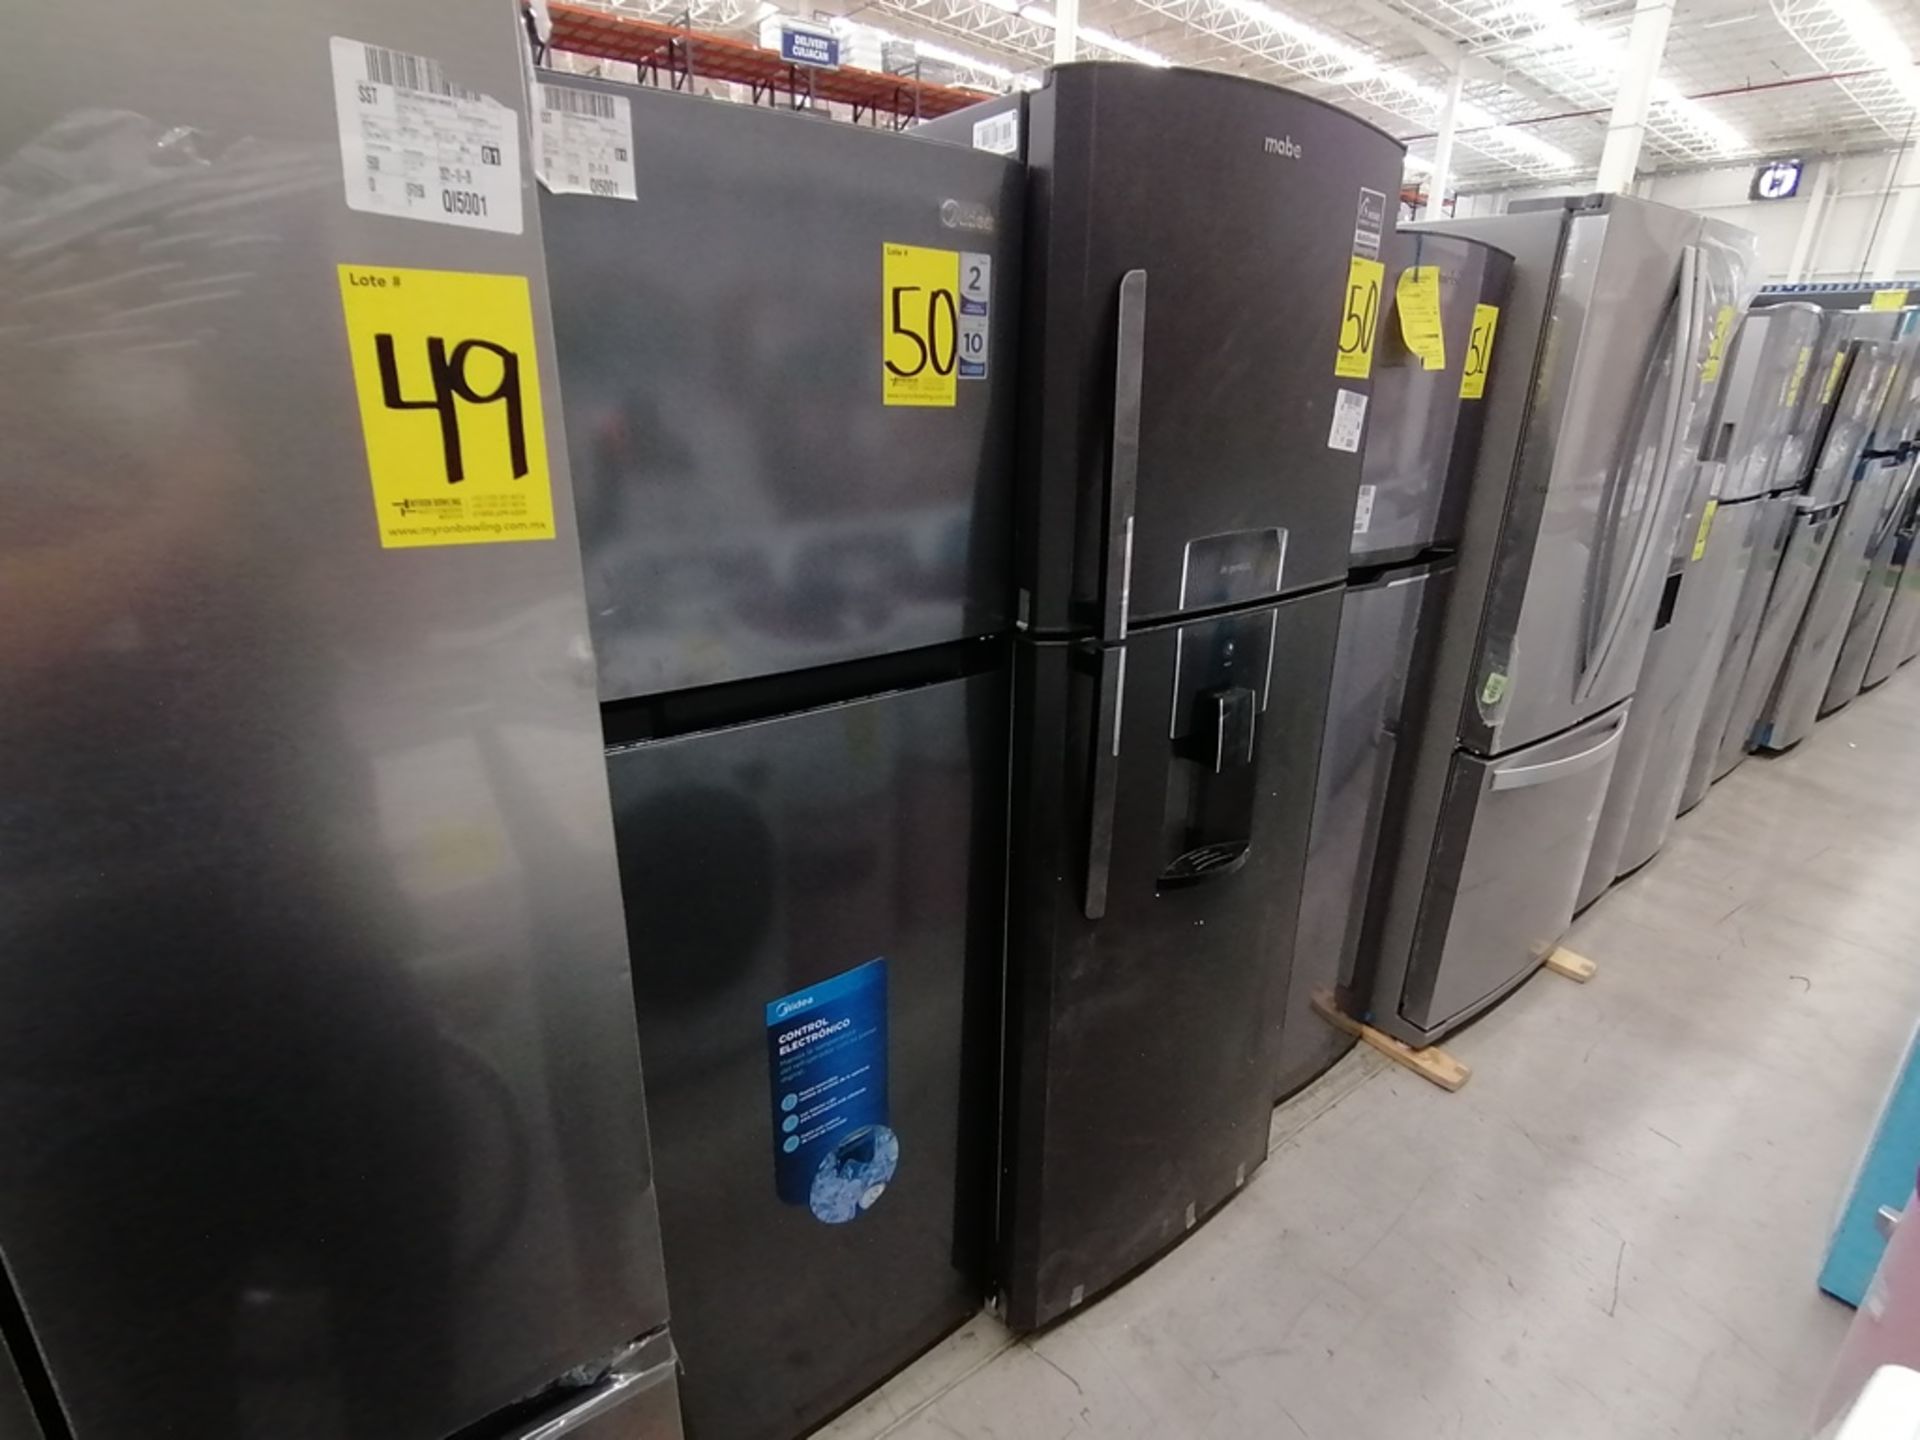 Lote de 2 refrigeradores incluye: 1 Refrigerador, Marca Midea, Modelo MRTN09G2NCS, Serie 341B261870 - Image 2 of 15